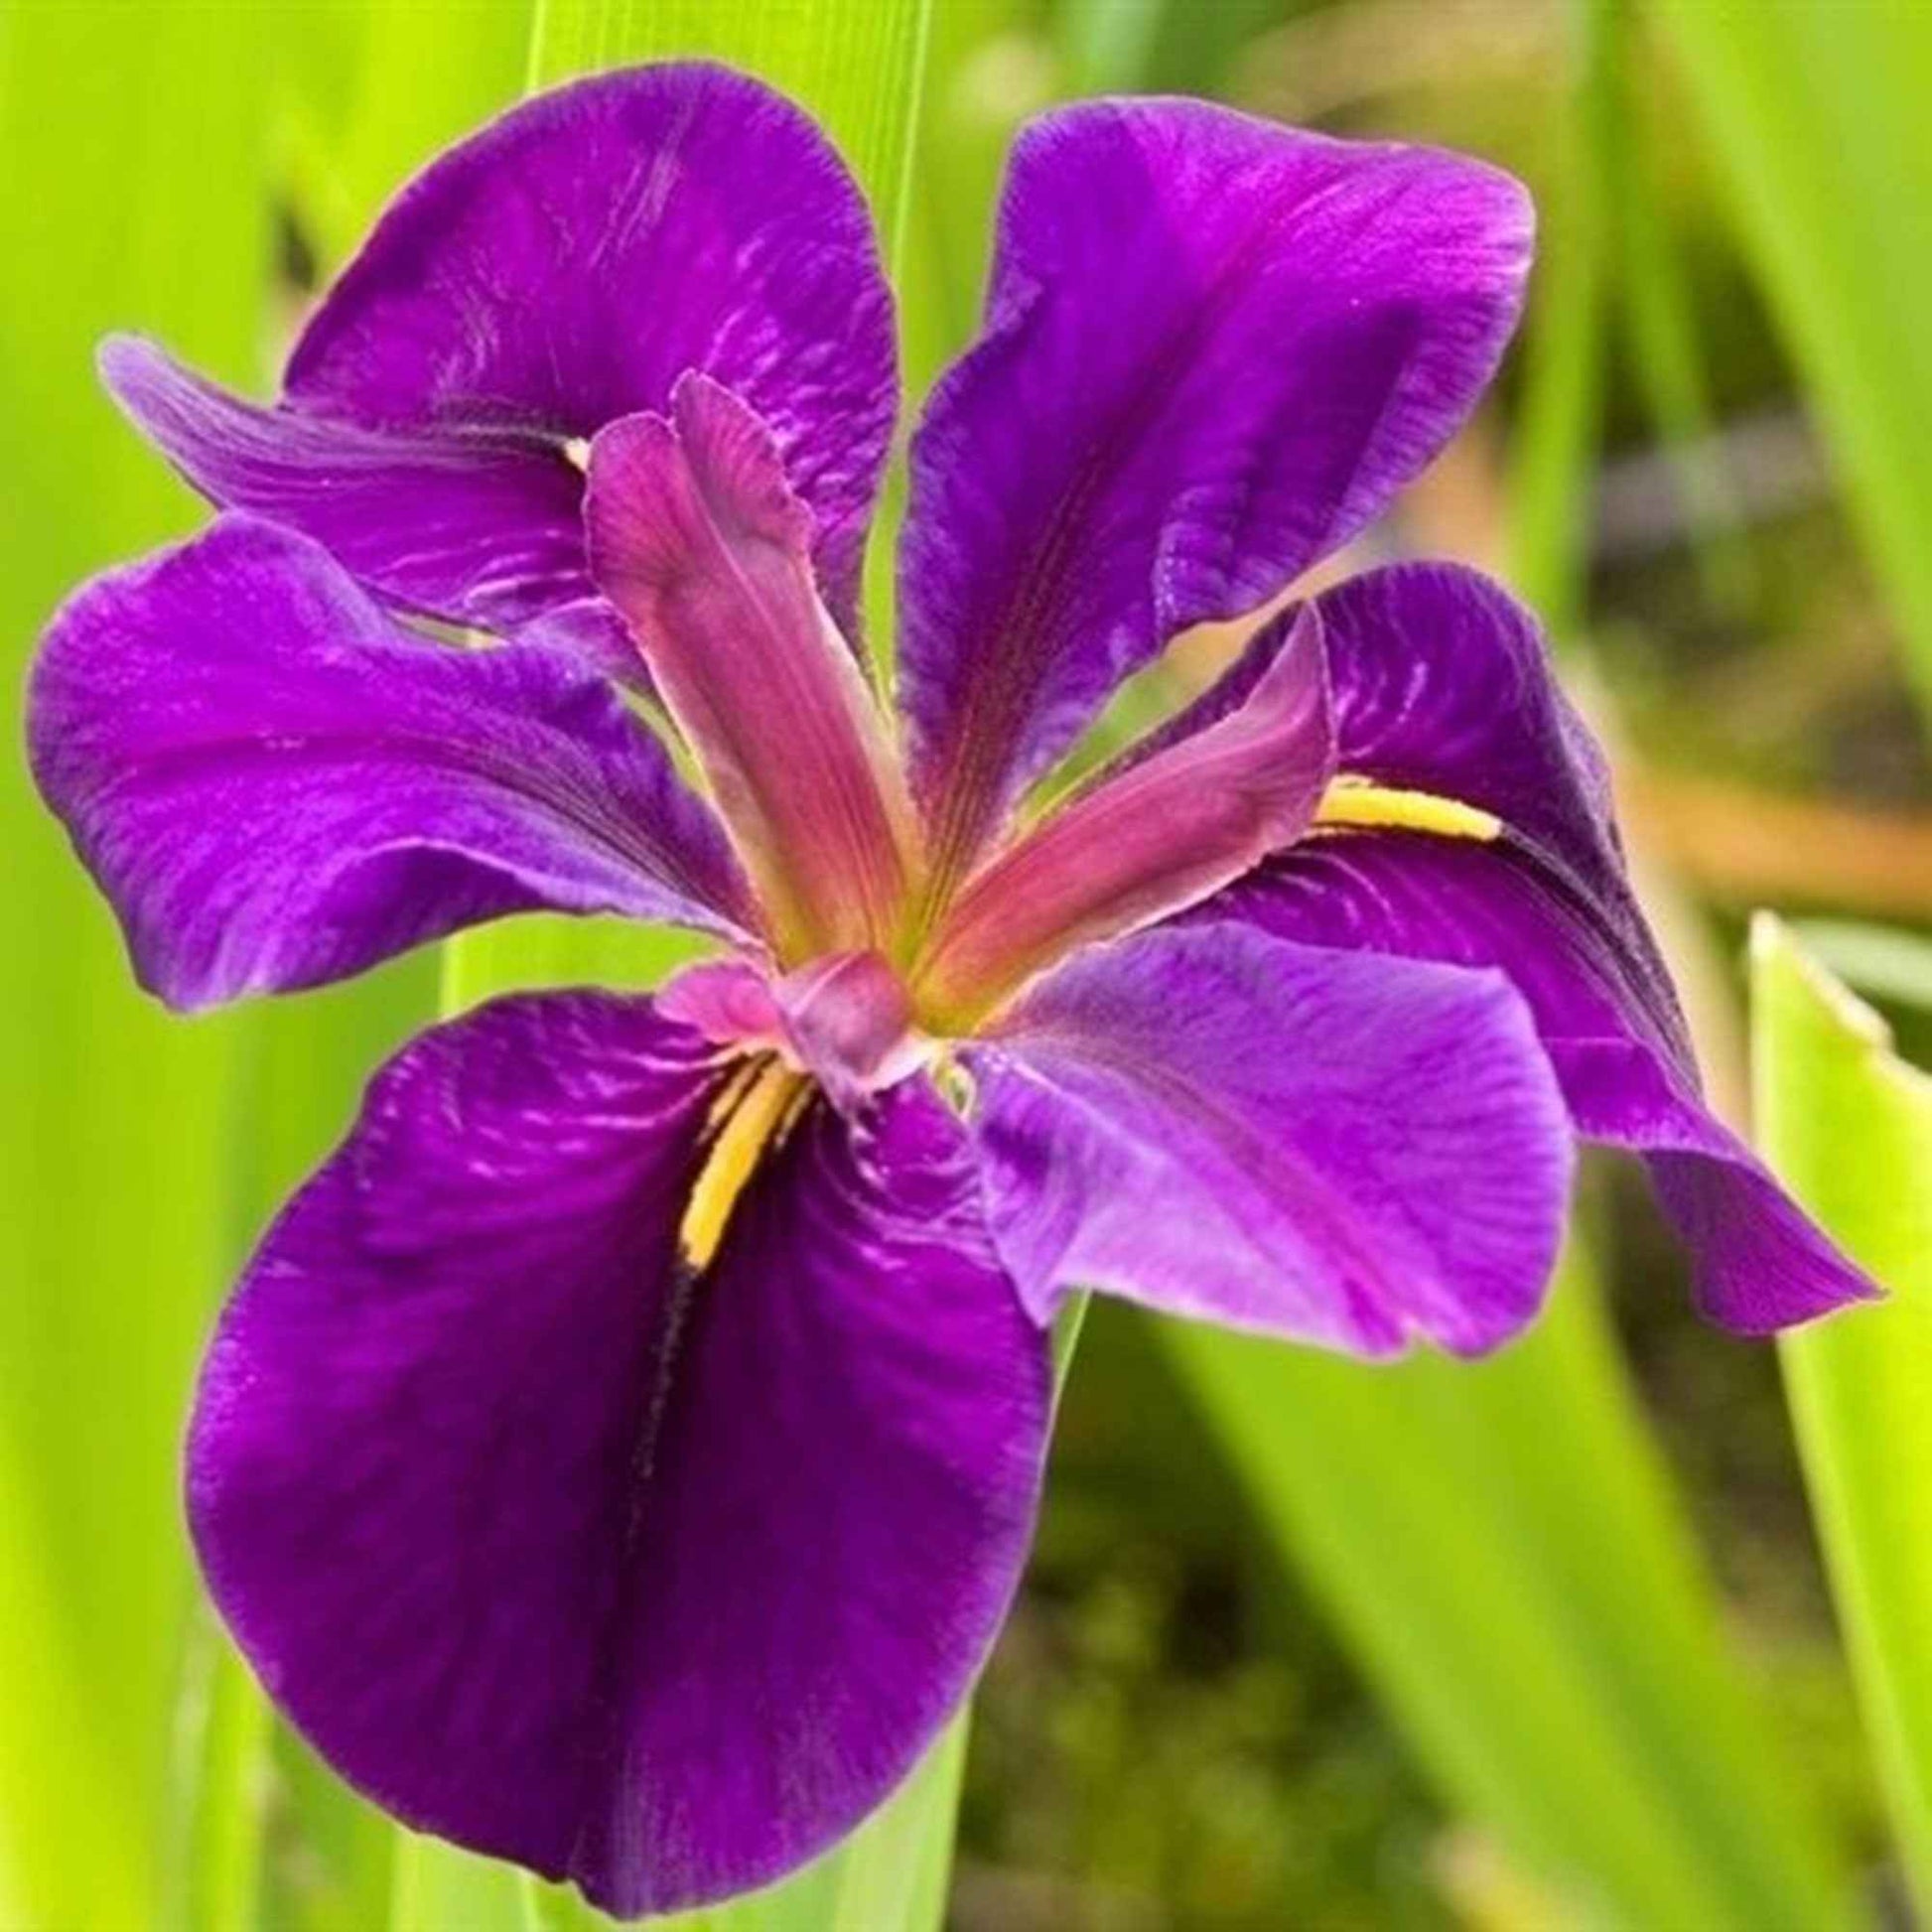 Lys noir Iris 'Black Gamecock' violet - Plante des marais, Plante de berge - Bassin naturel